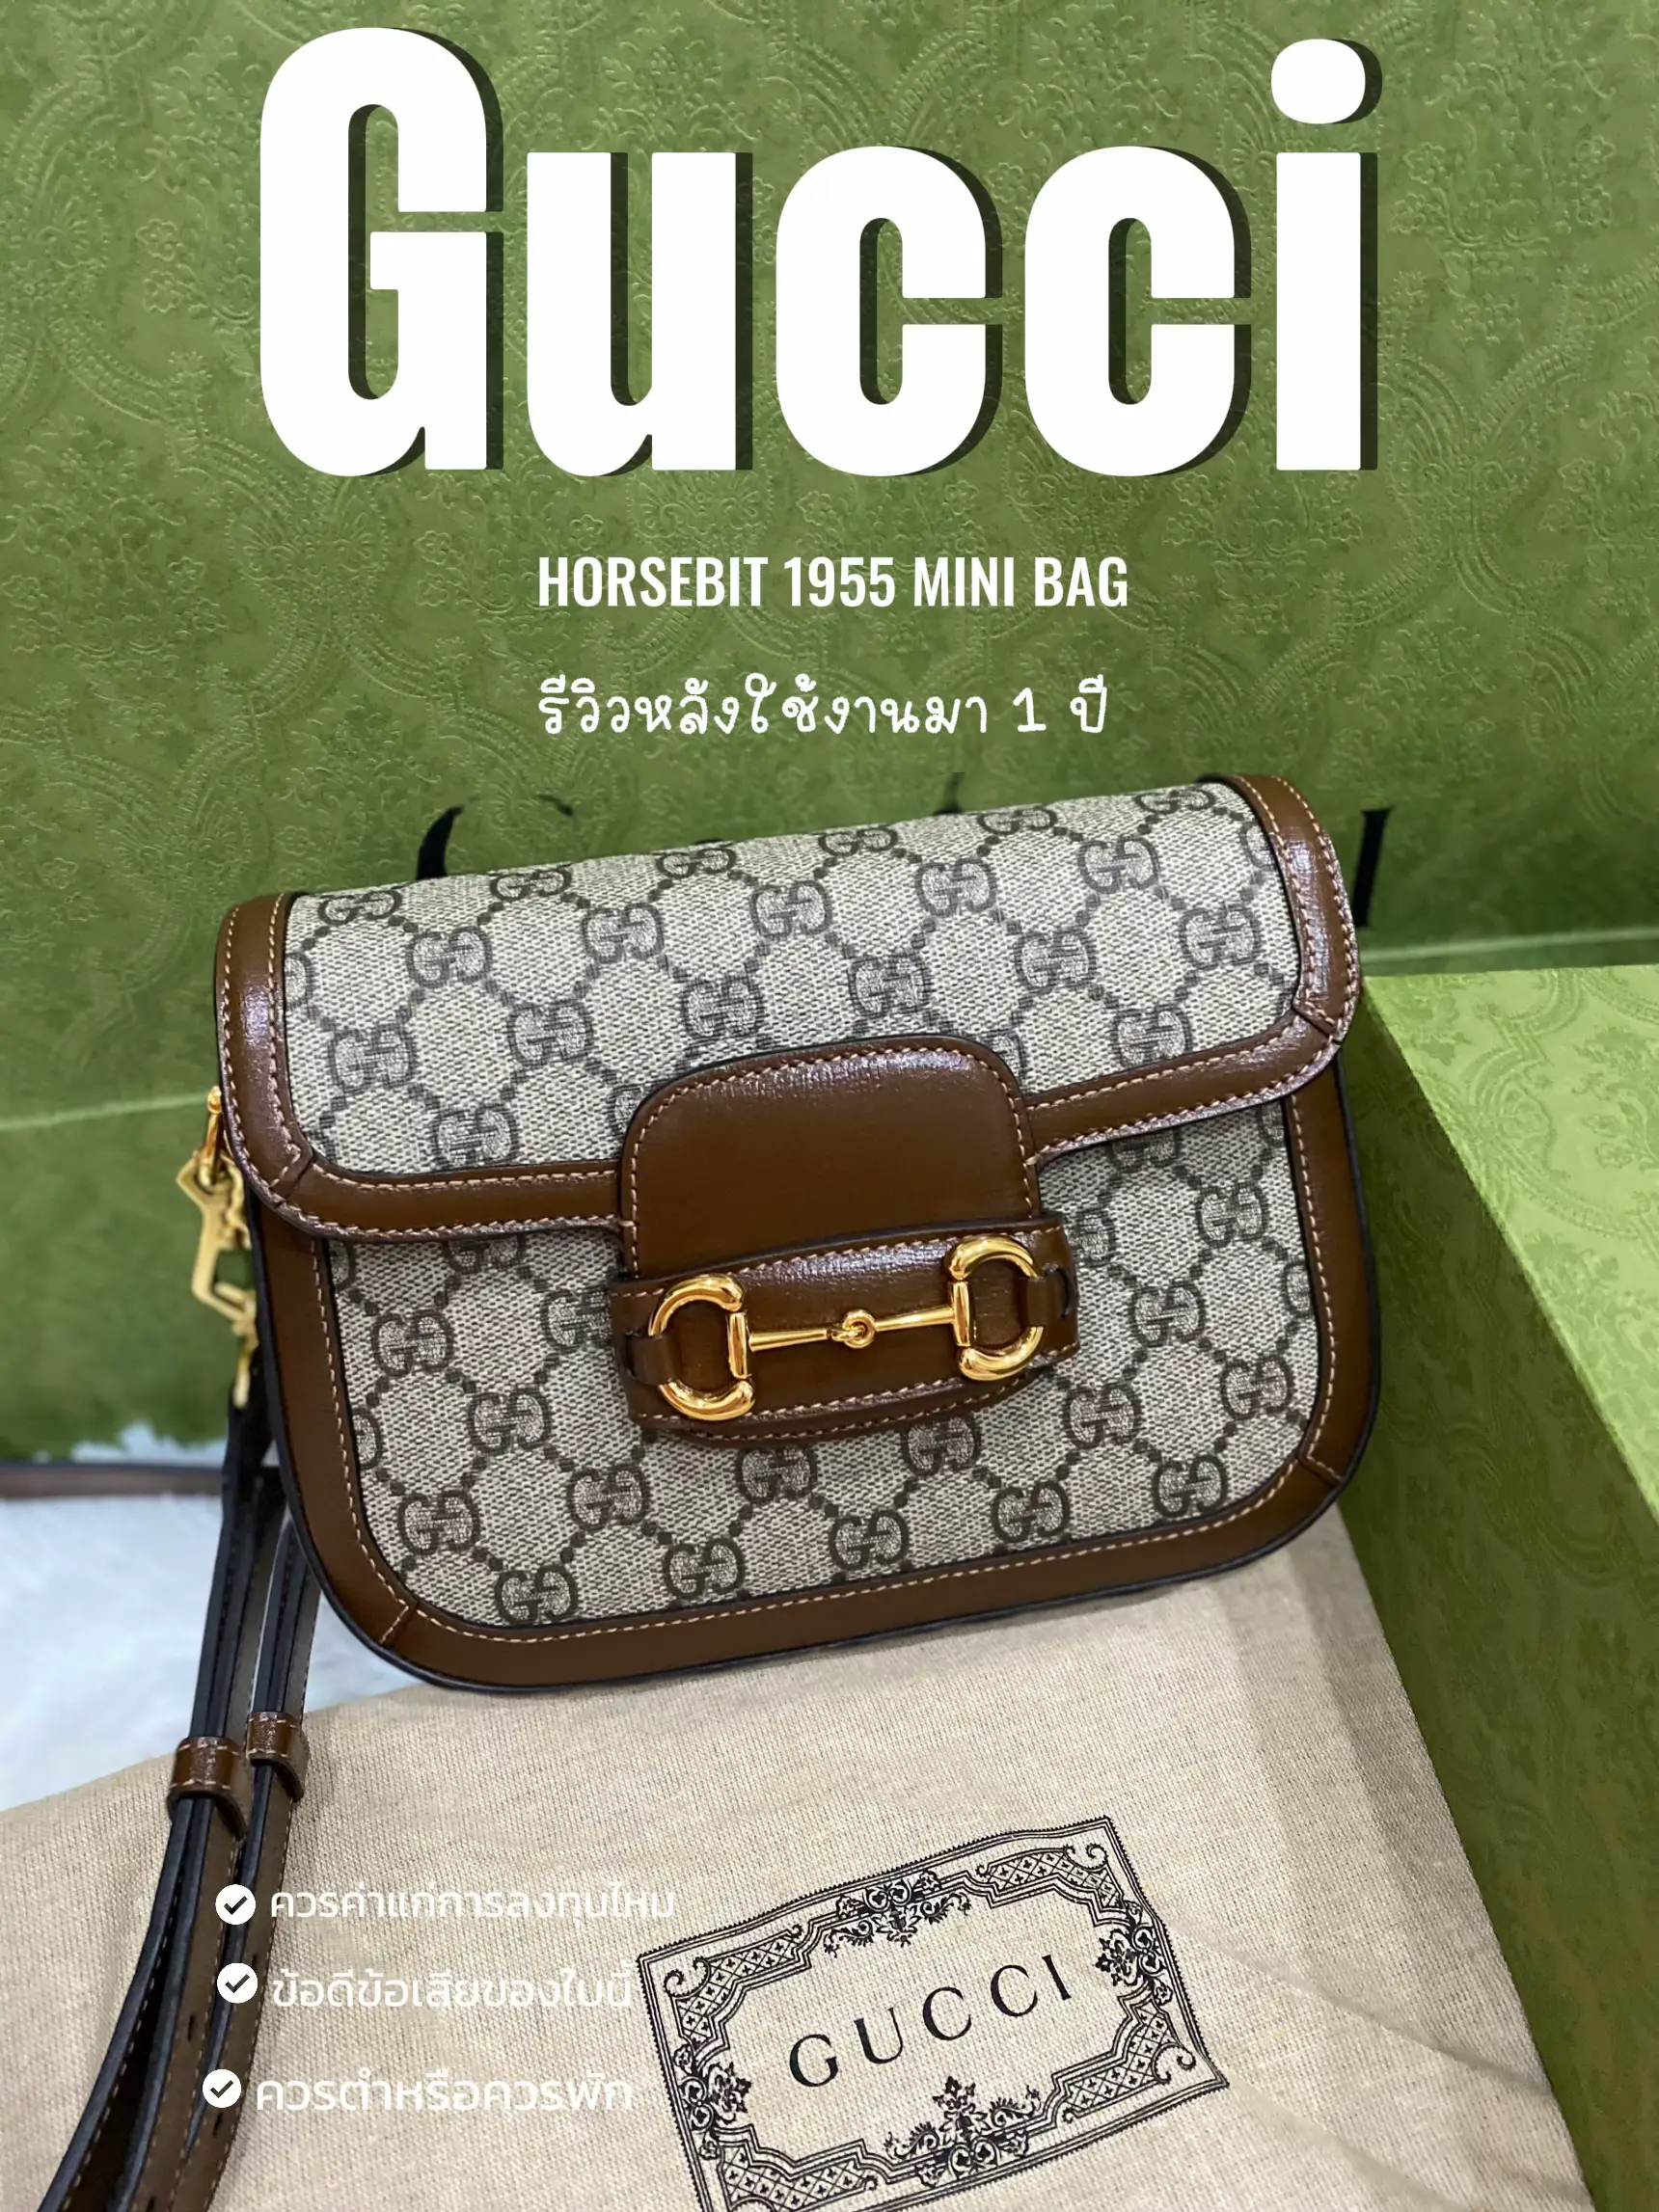 Purse Strap No Brand For Gucci 1955 Gucci Horsebit Red Green